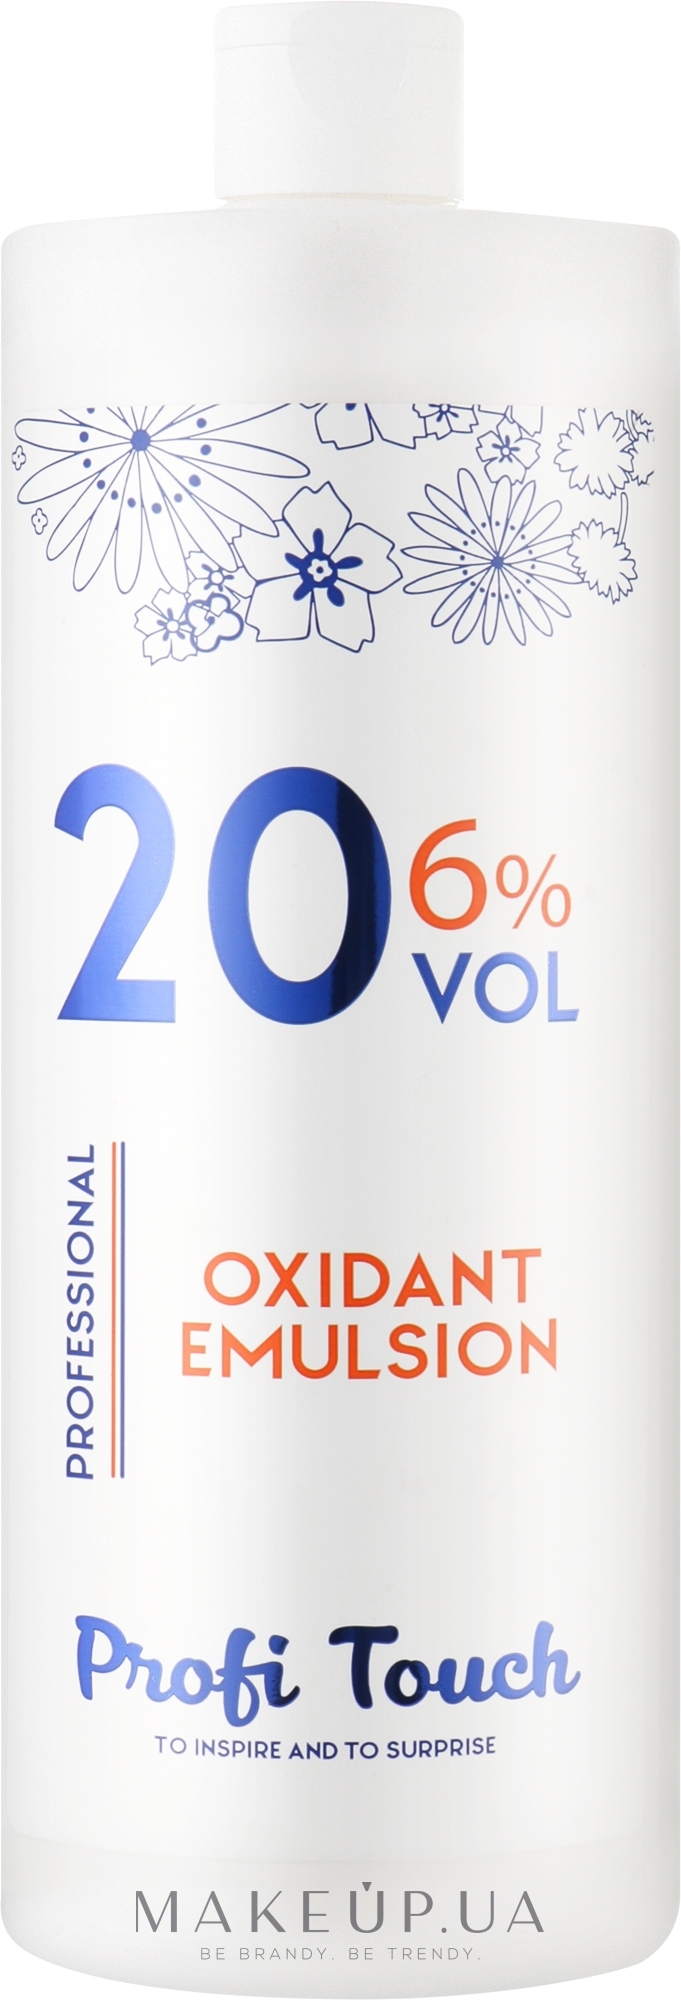 Гель-окислювач 20 vol 6% - Profi Touch Oxidant Emulsion — фото 1000g